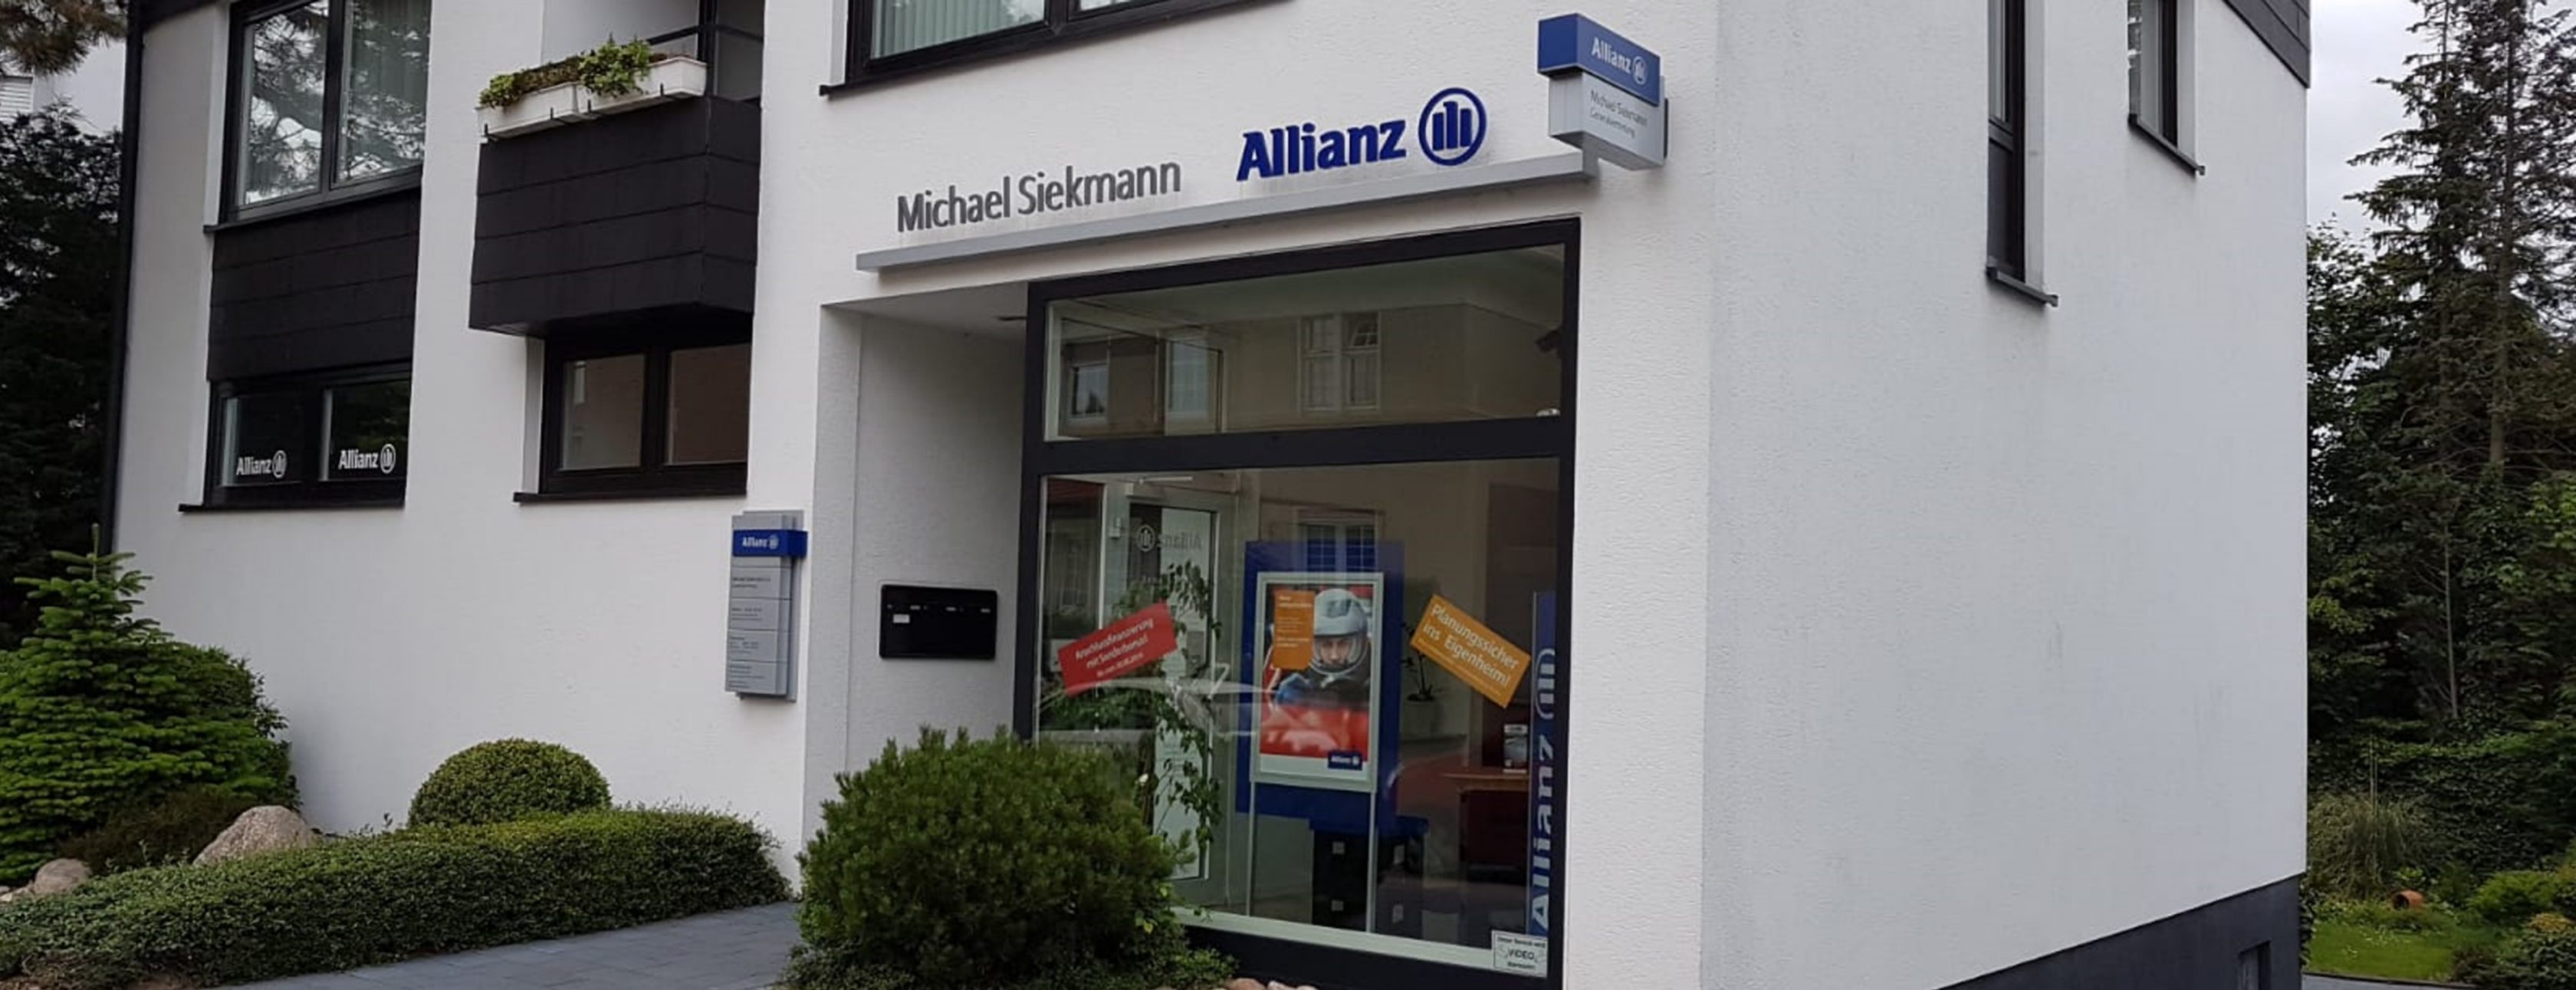 Allianz Versicherung Michael Siekmann e.K. Lübbecke - Persönlich, Digital und  auch  vor Ort 